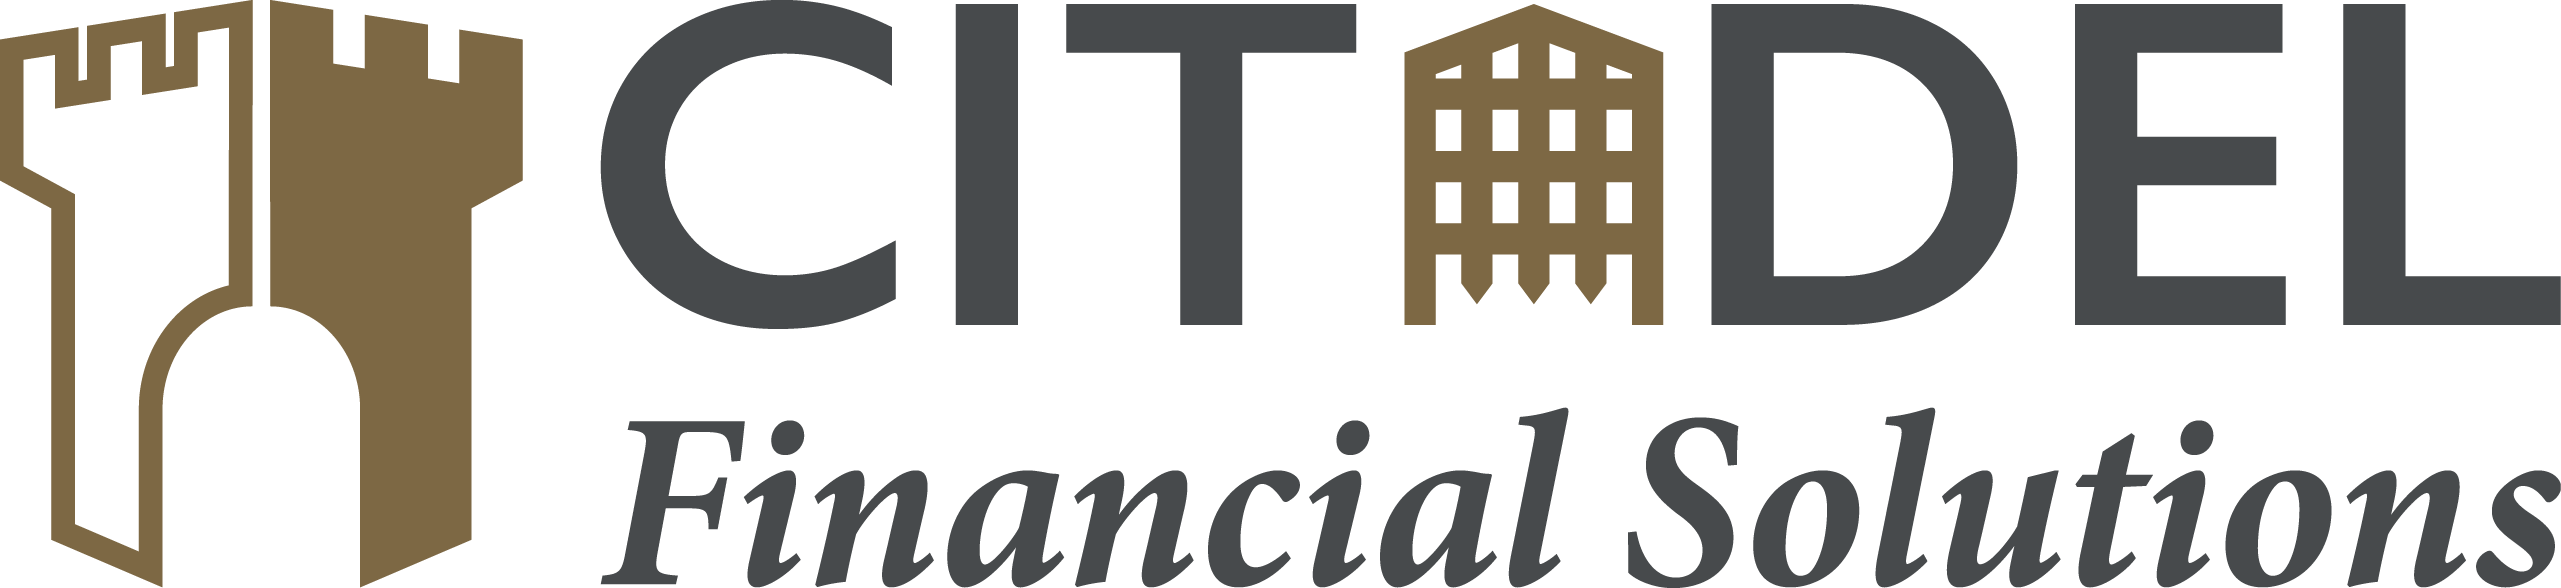 Citadel Financial Solutions